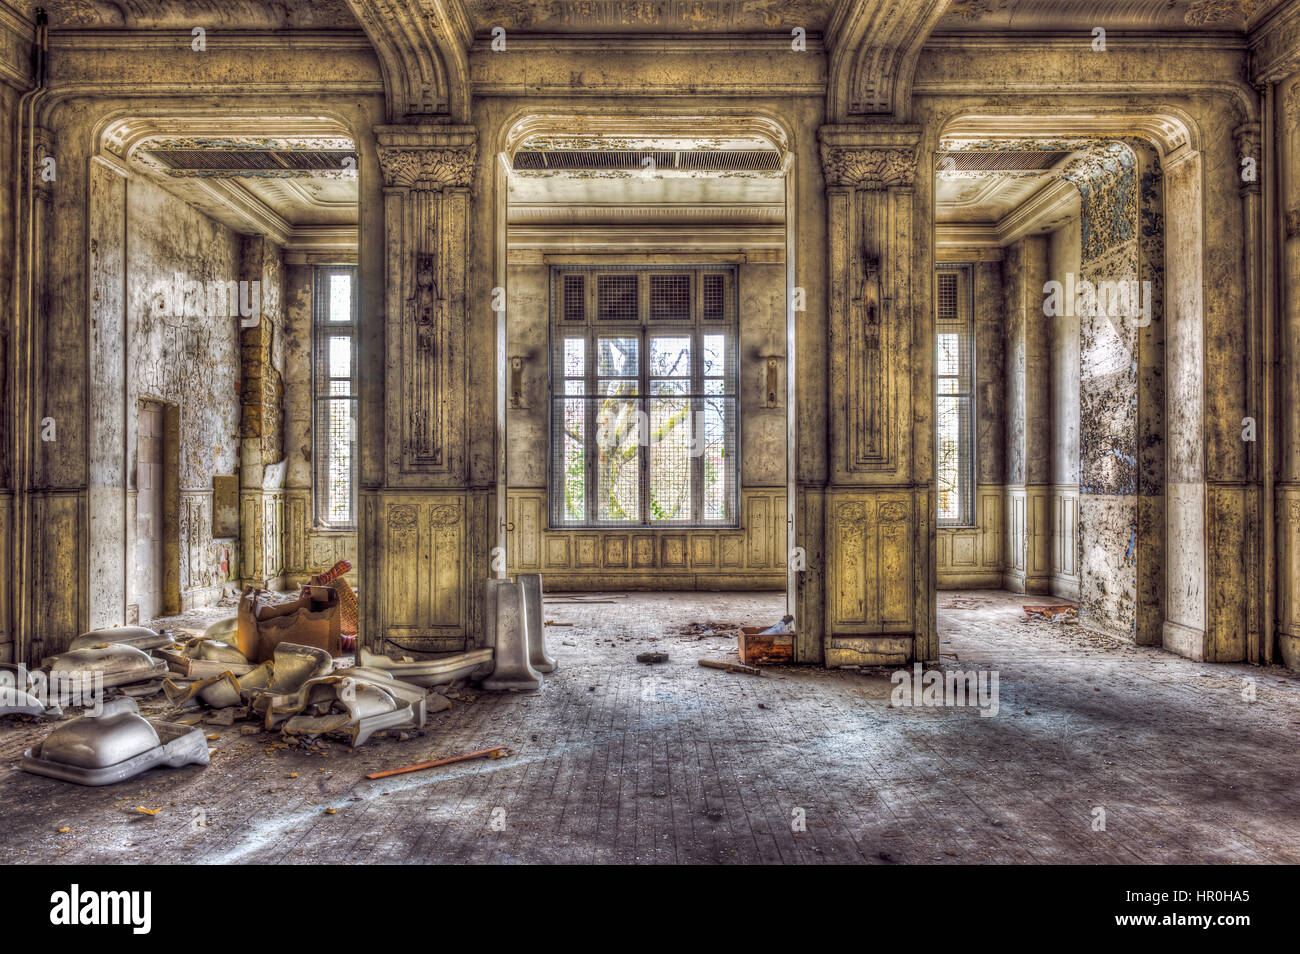 La majestuosa sala vacía en un palacio abandonado Foto de stock